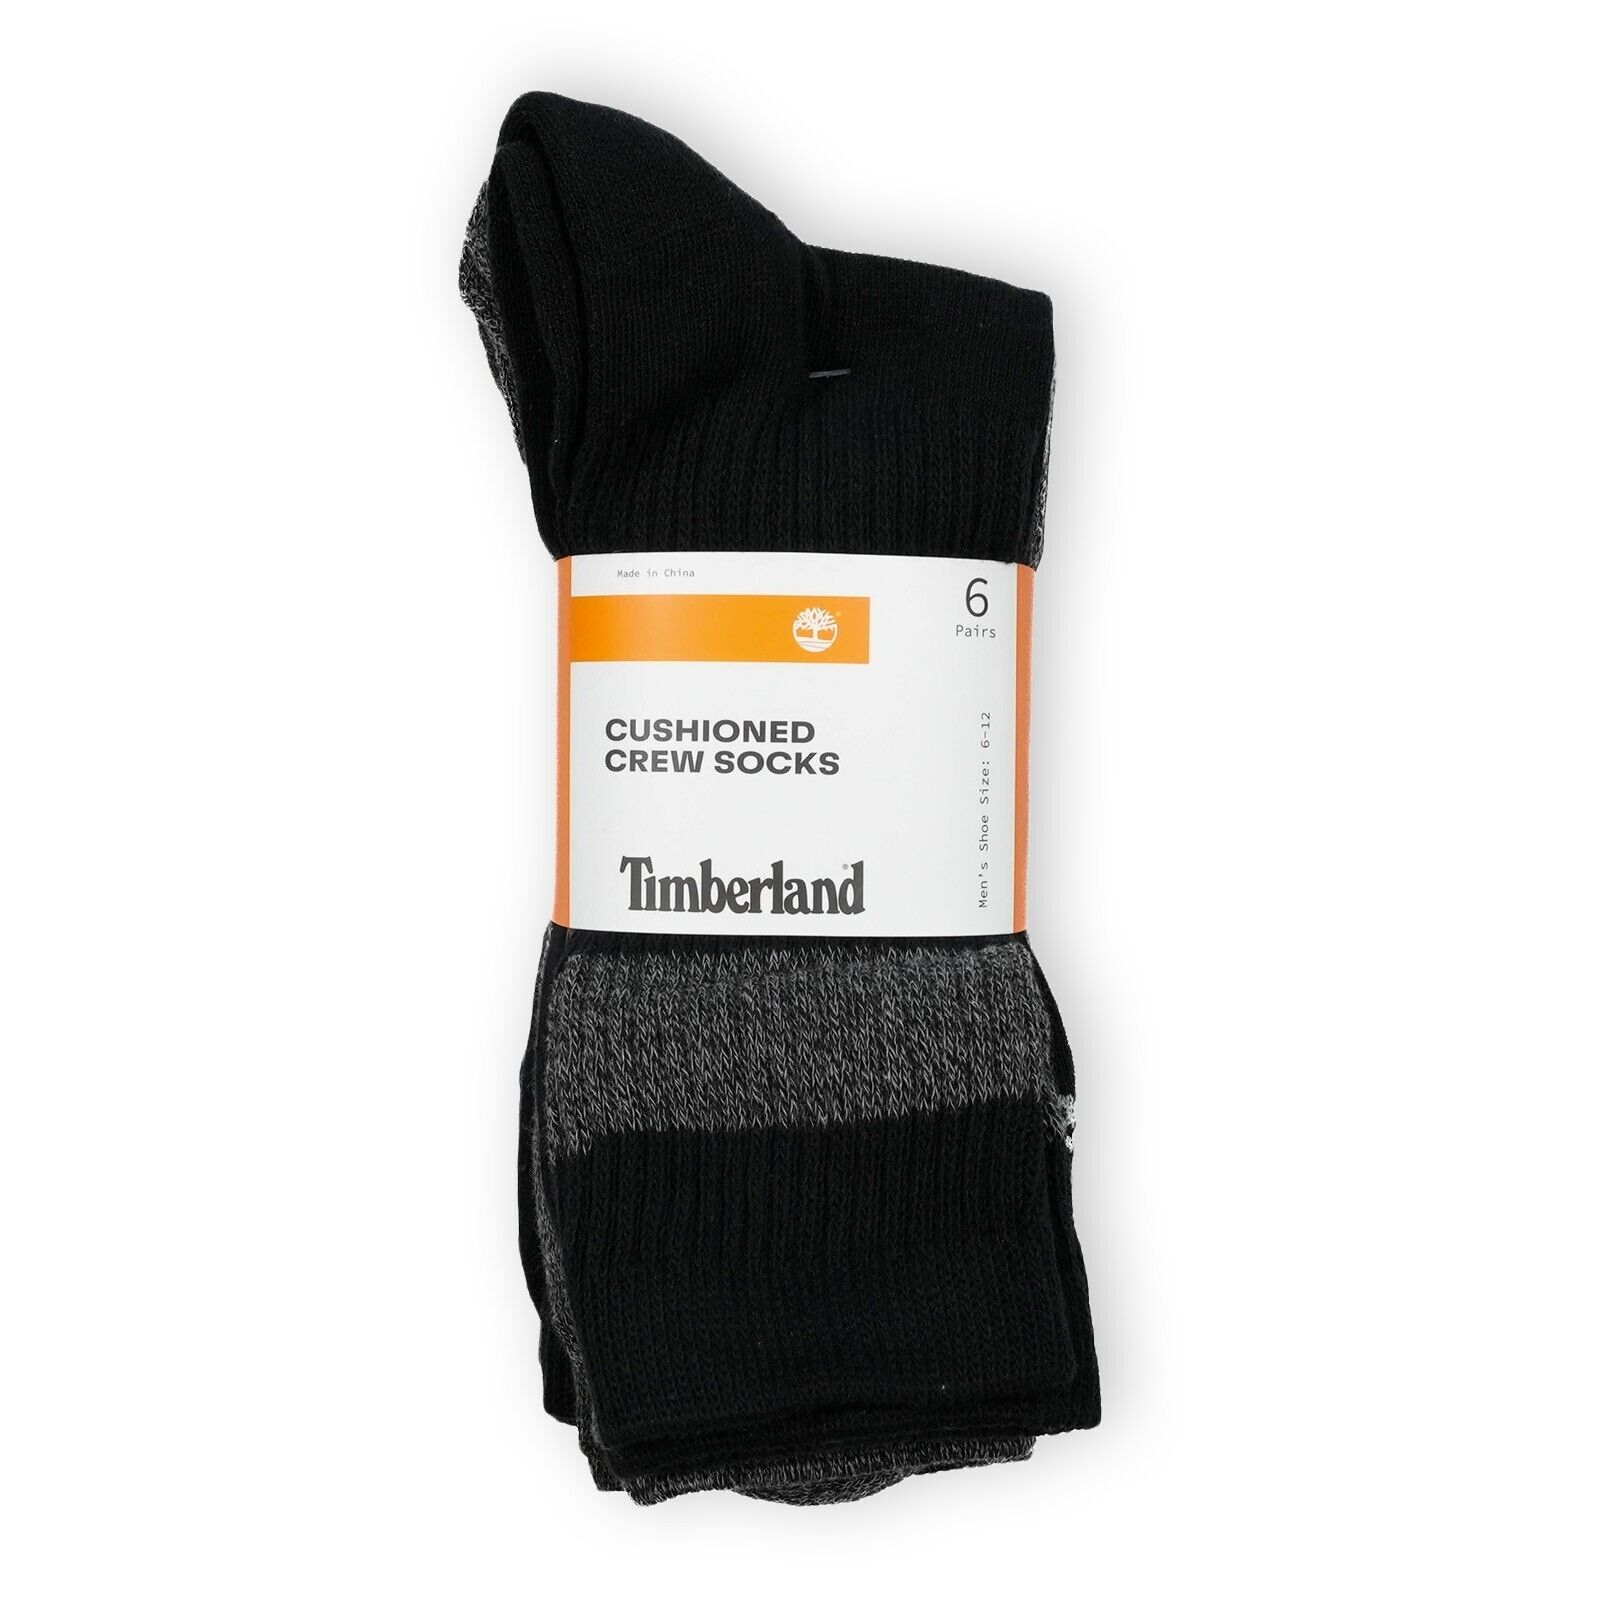 Timberland Men's Cushioned Crew Socks, 6 Pairs